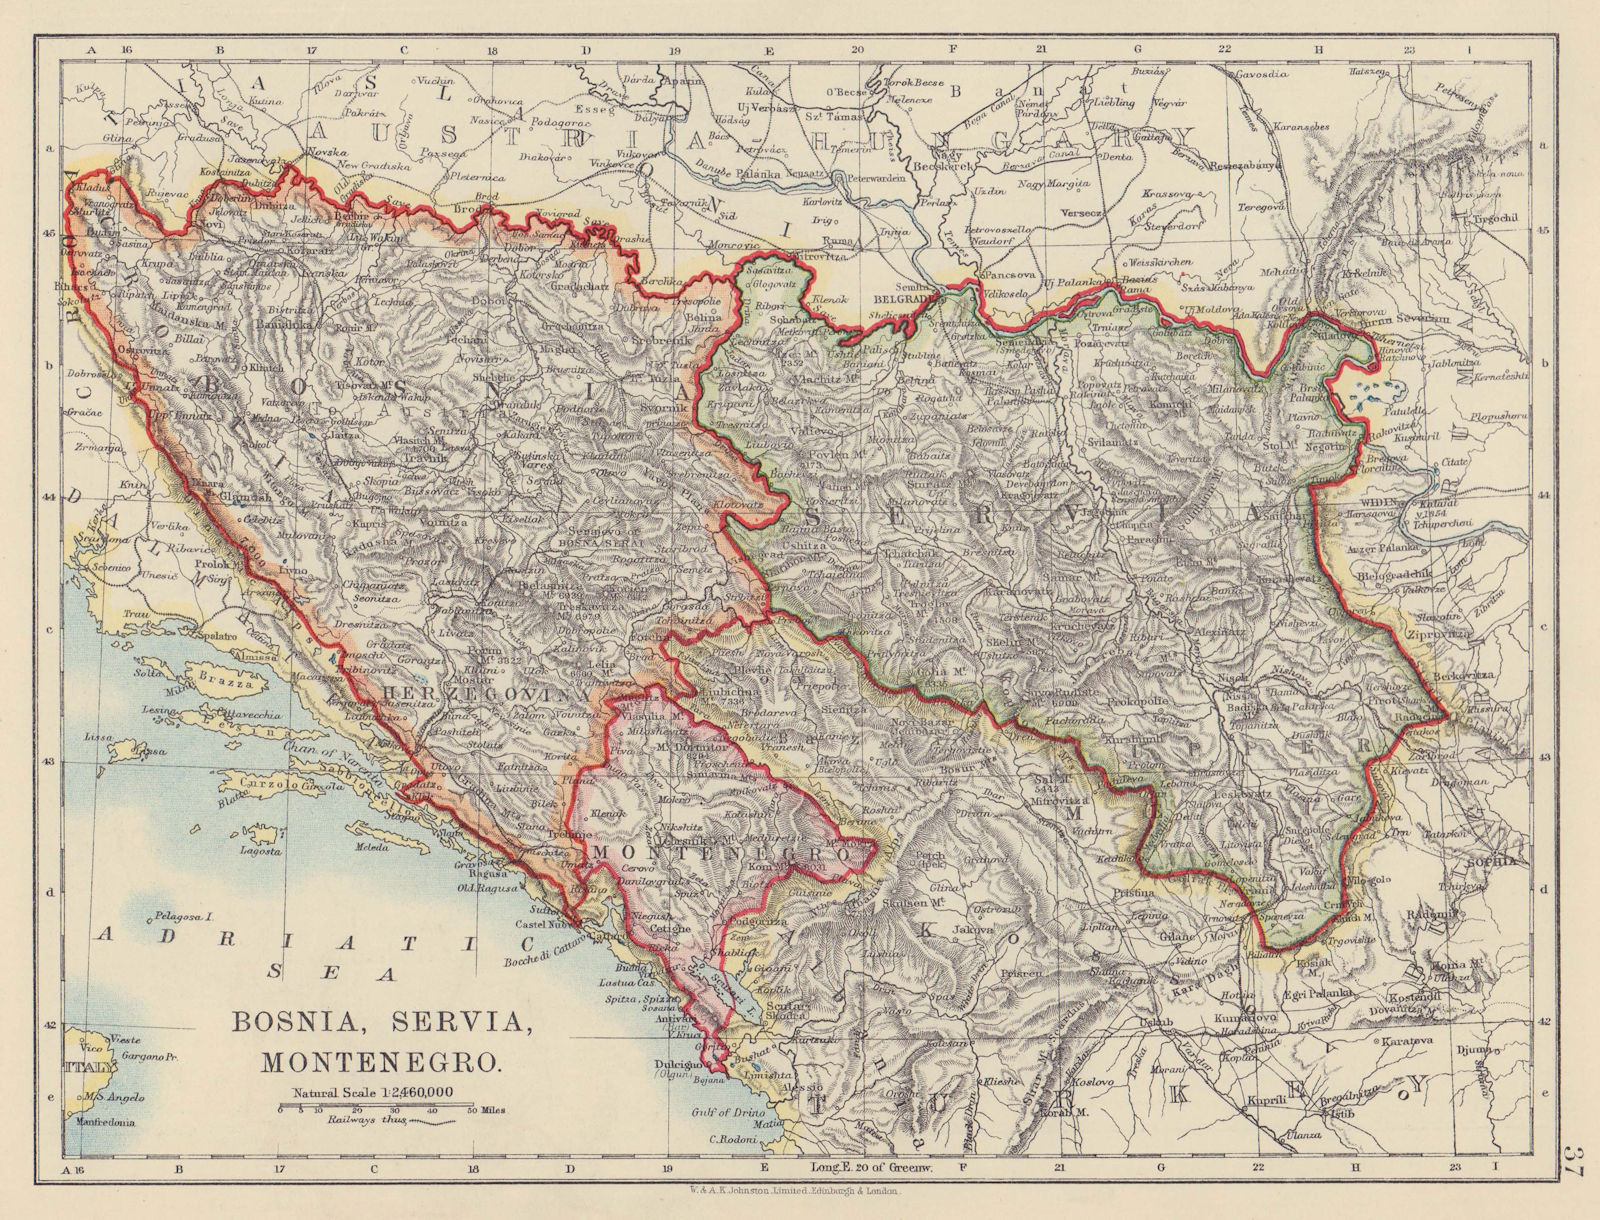 BOSNIA SERVIA MONTENEGRO. Balkans Croatia Serbia Herzegovina. JOHNSTON 1910 map